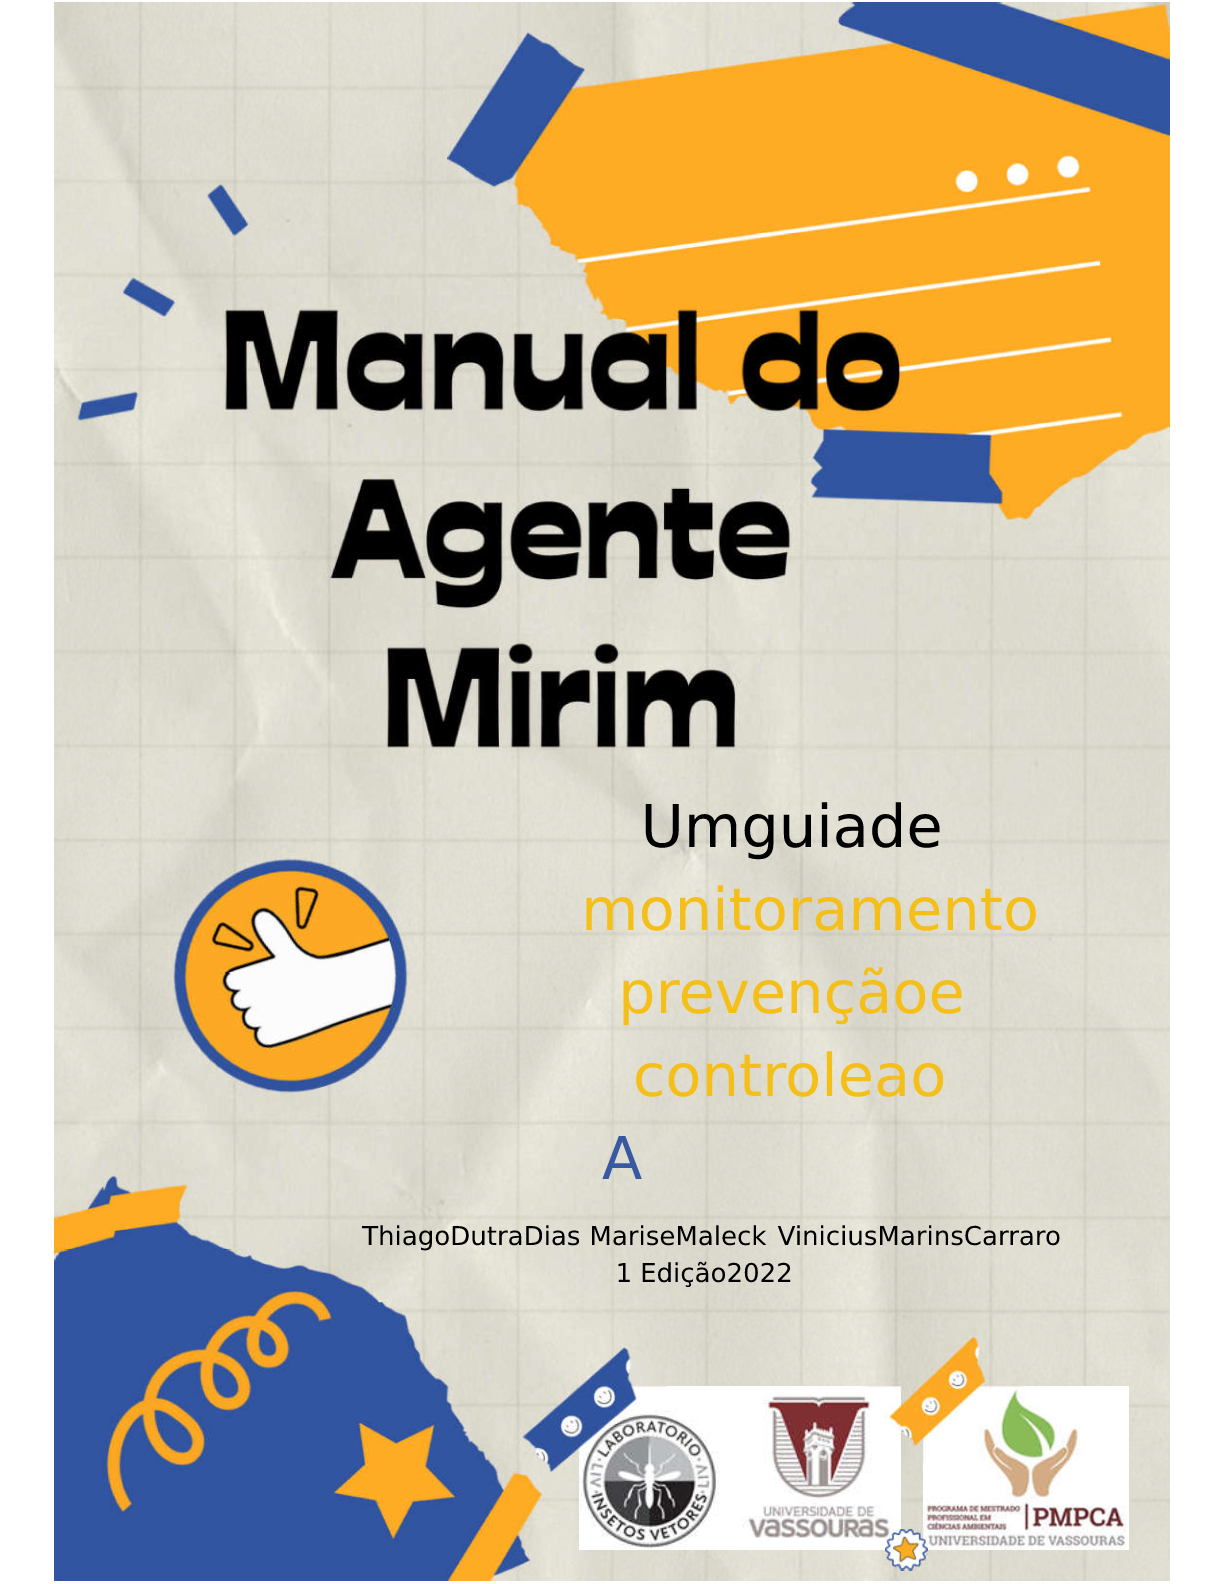 					Visualizar 2022: Manual do Agente Mirim:  Um guia de monitoramento, prevenção e controle ao Aedes aegypti 
				